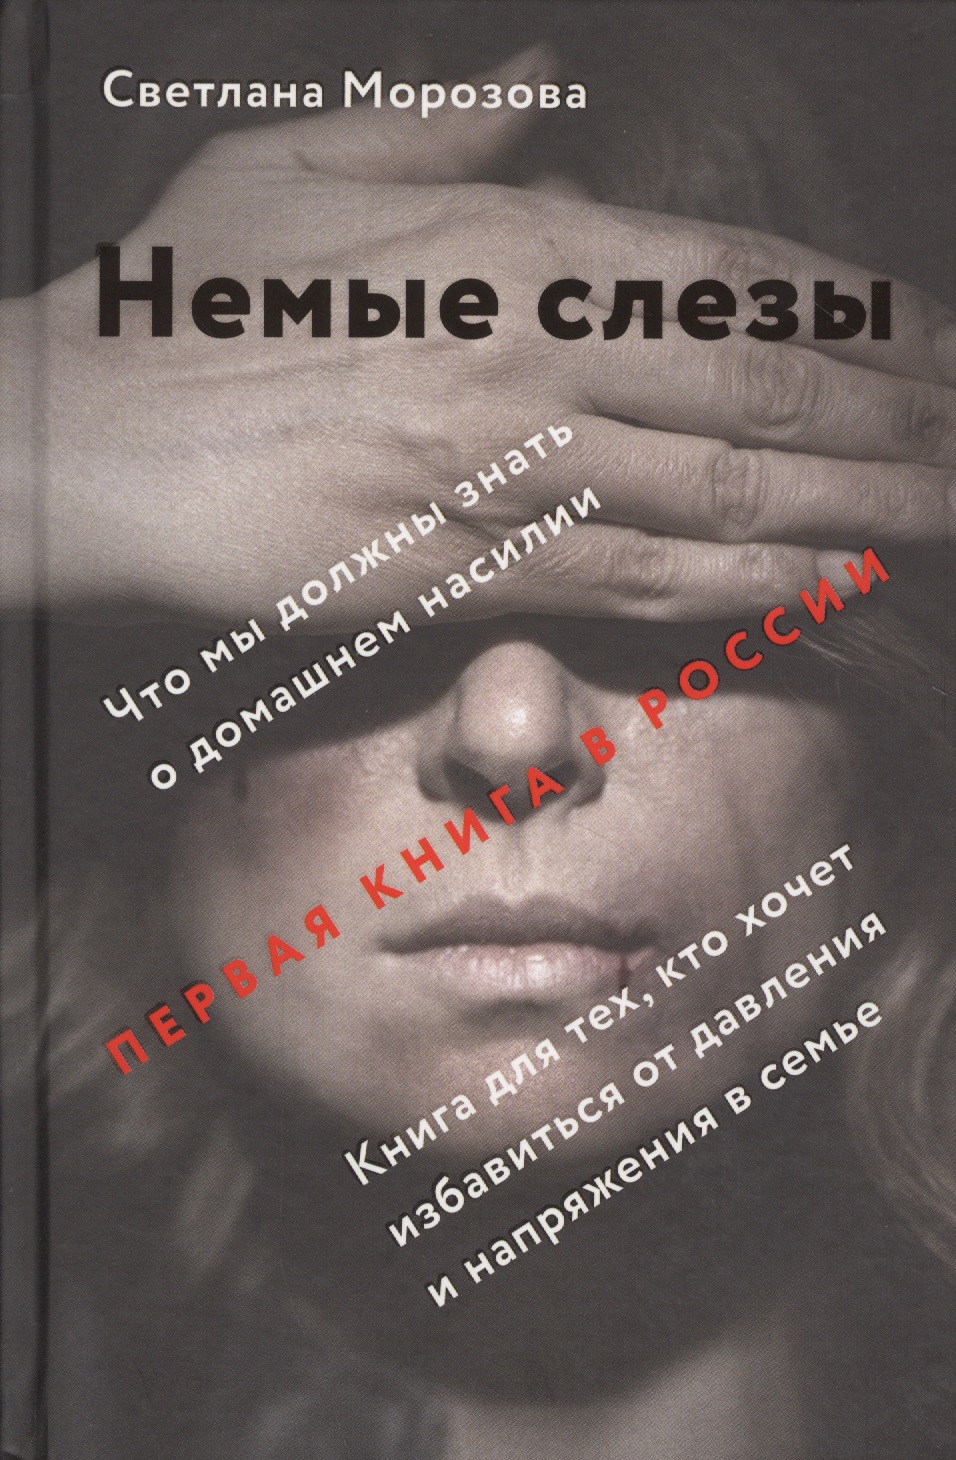 Морозова Светлана Андреевна - Немые слезы. Книга для тех, кто хочет избавиться от давления и напряжения в семье.